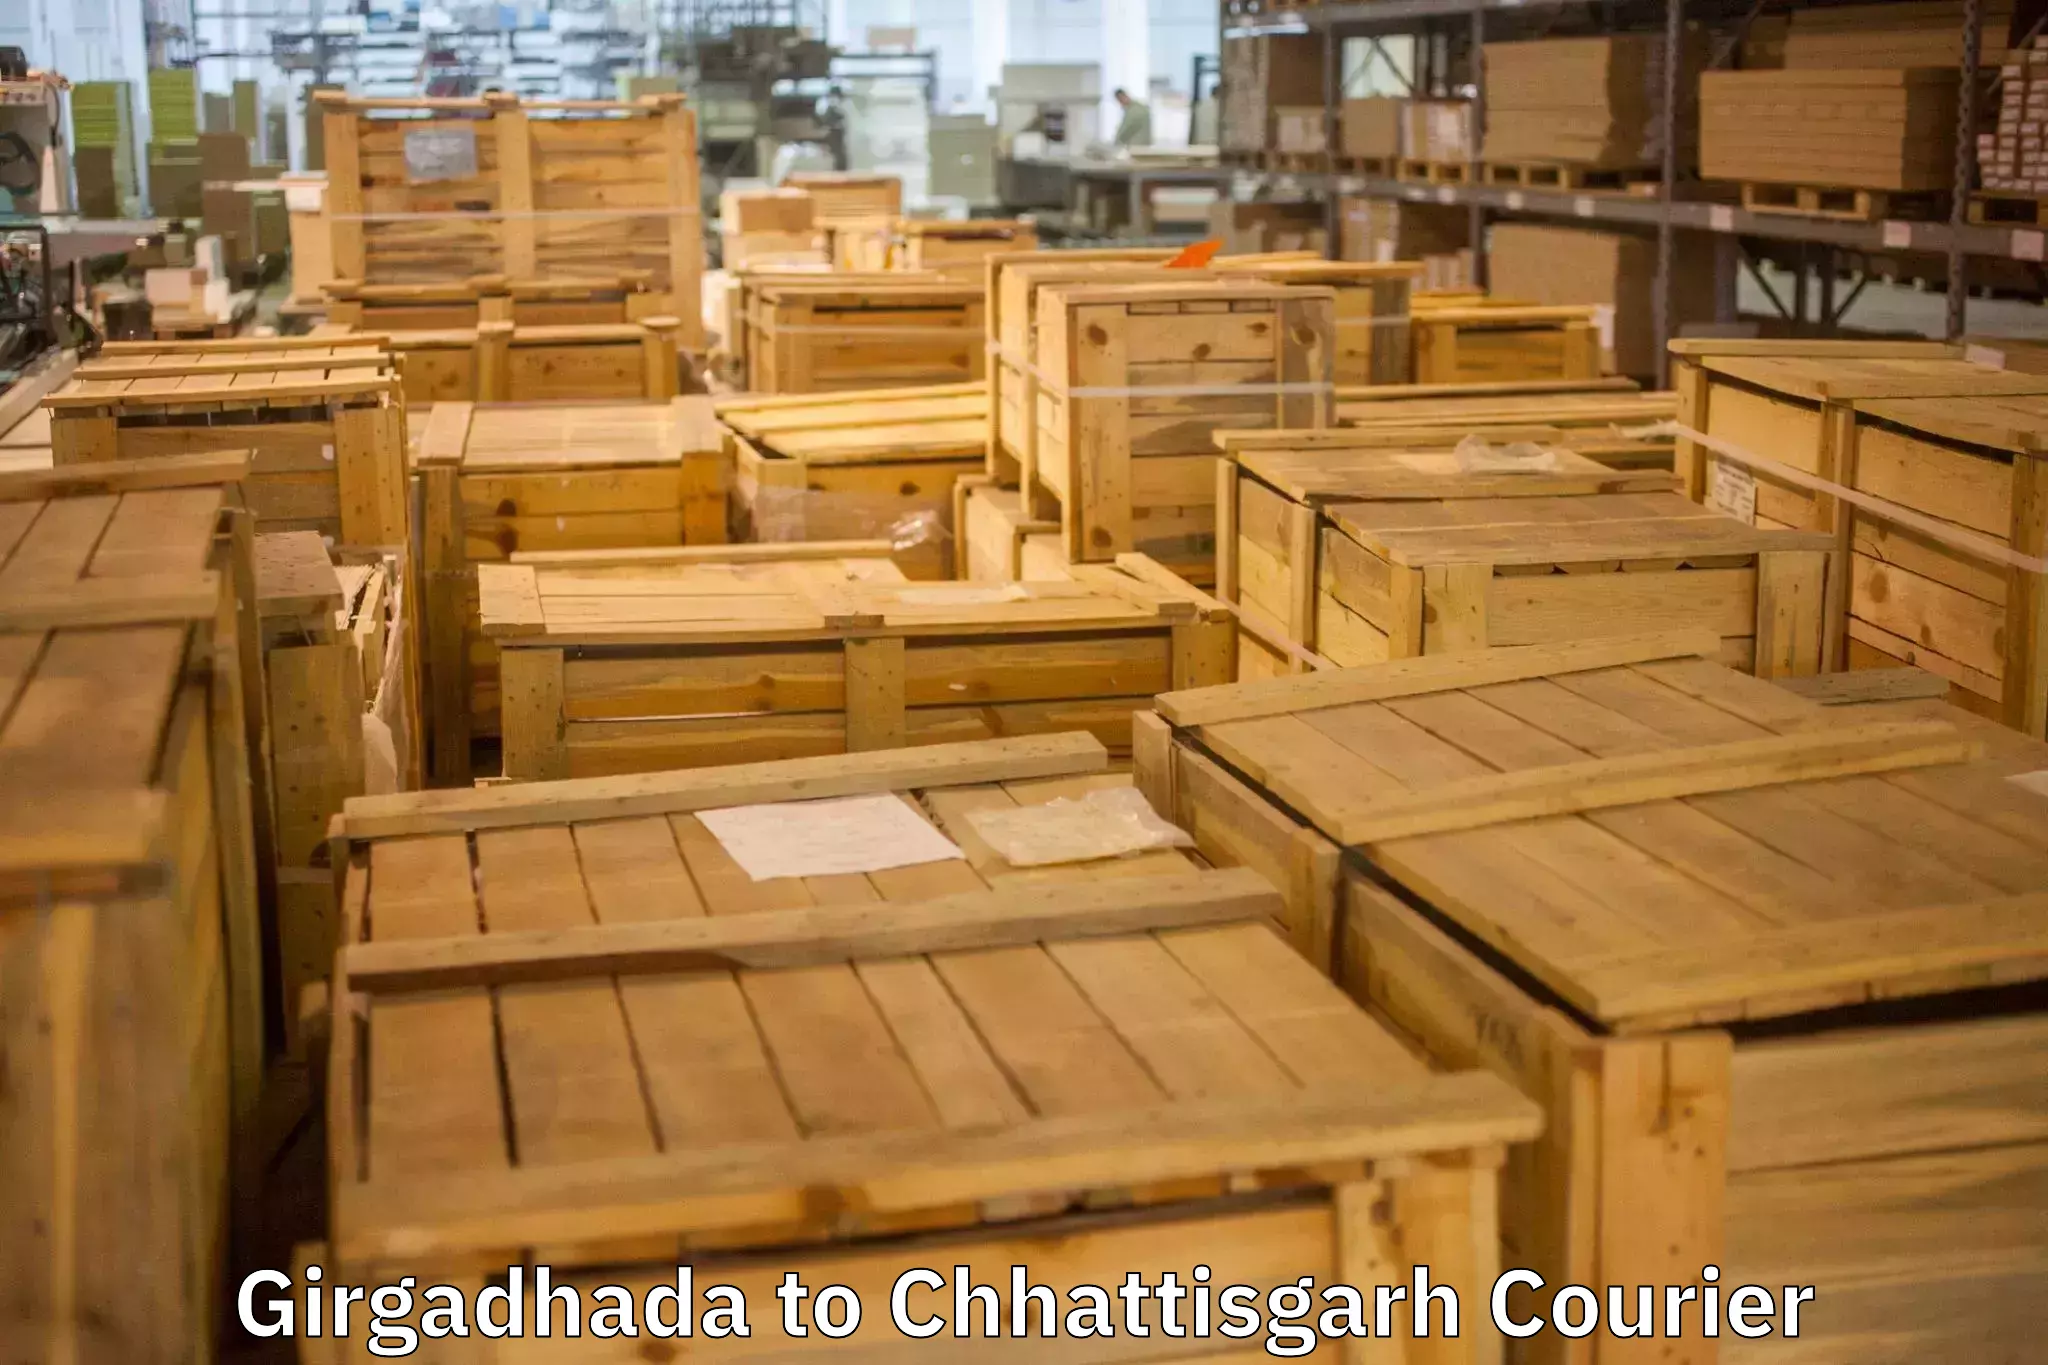 Stress-free furniture moving Girgadhada to Pratappur